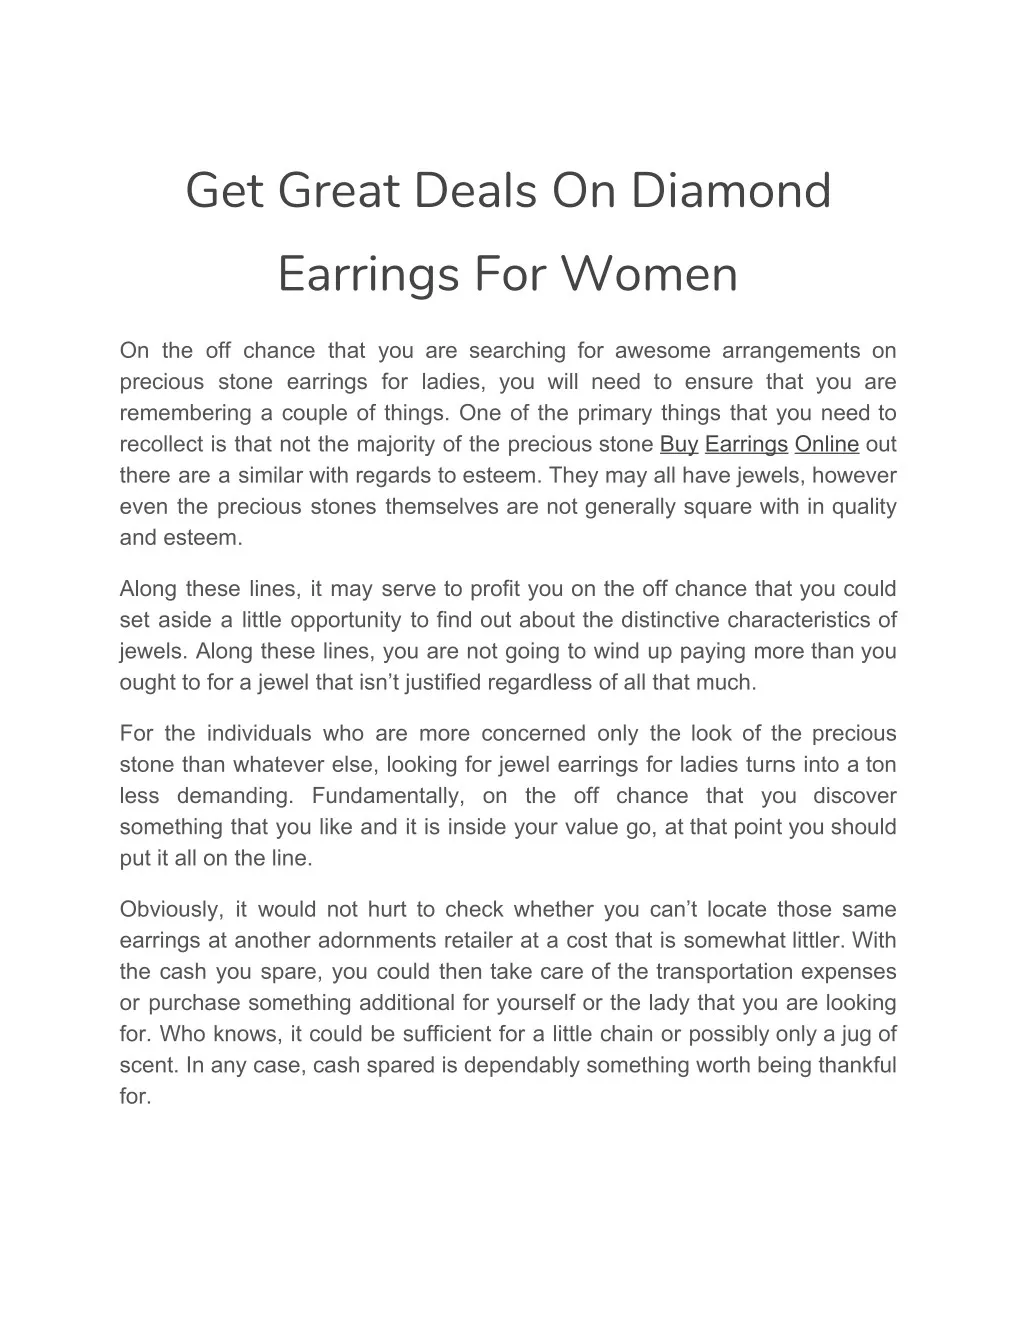 get great deals on diamond earrings for women